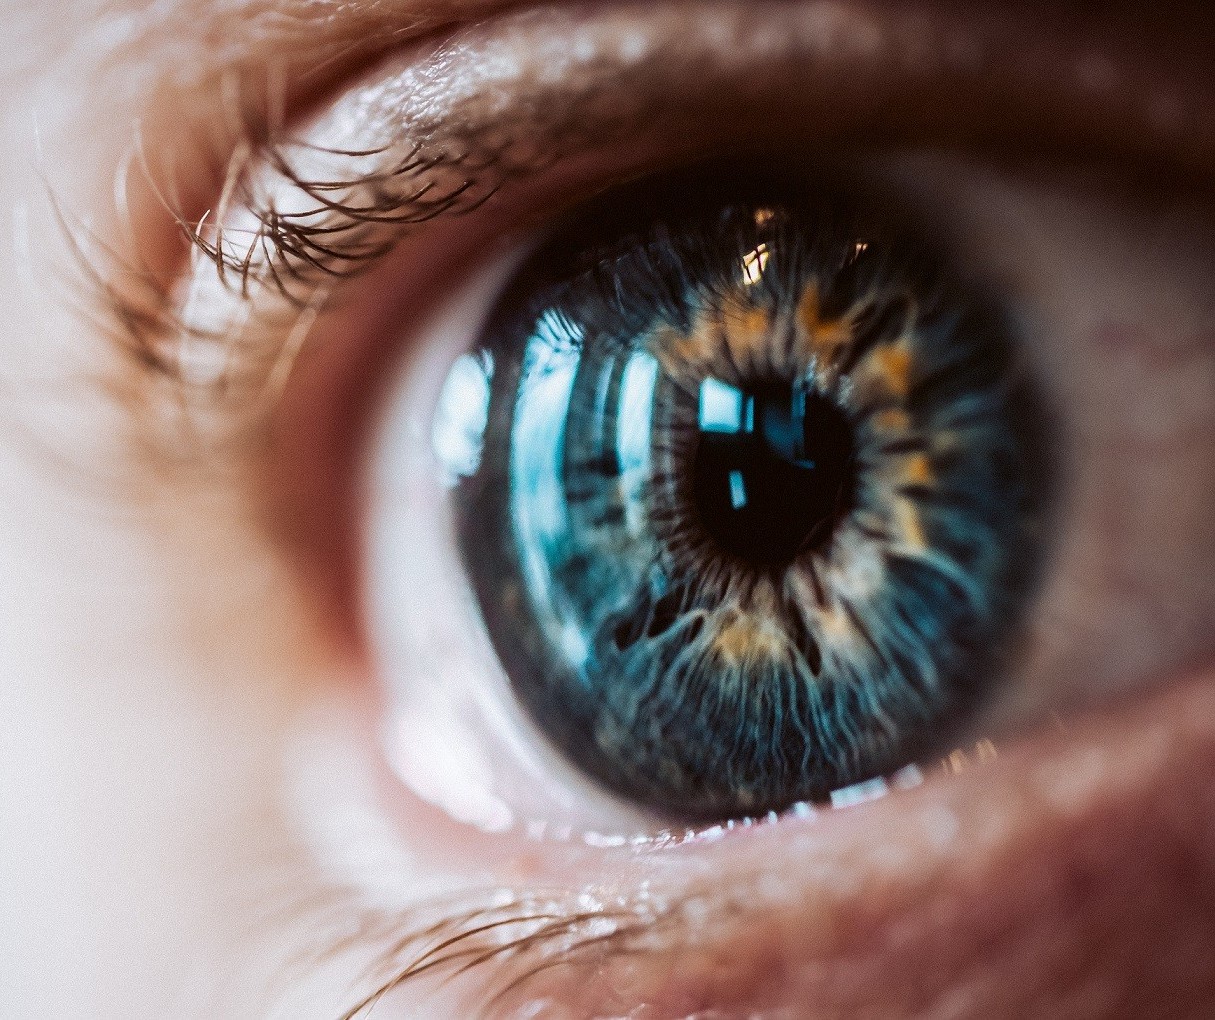 Evento chama a atenção para as doenças oculares raras